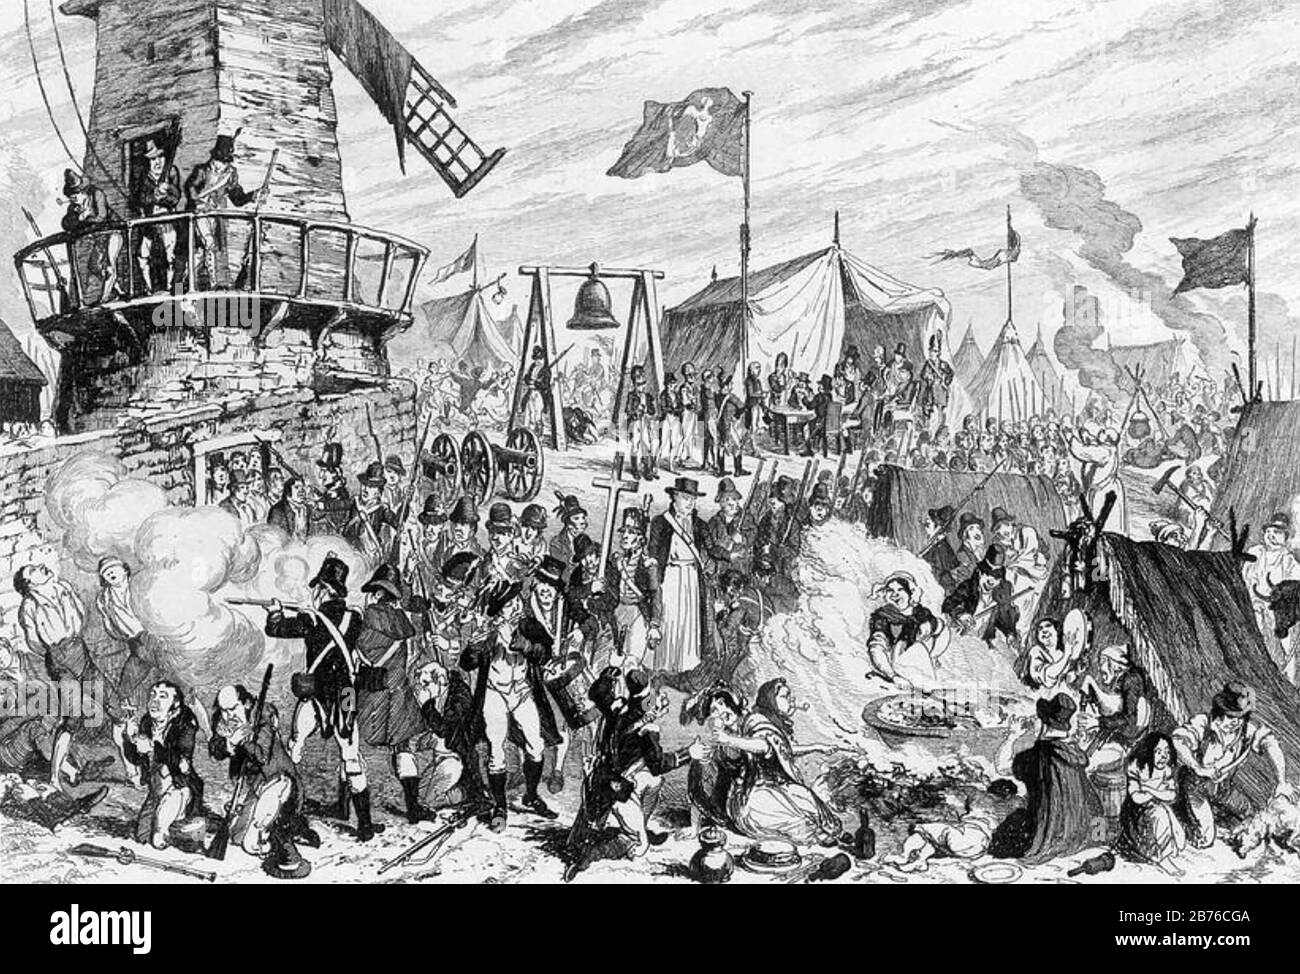 BATAILLE DE VINAIGRE HILL 21 juin 1798, Enniscorthy, Comté de Wexford. La caricature de George Cruikshank lamponing The United Irishmen, publiée dans l'Histoire de la rébellion irlandaise de William Maxwell en 1798 publiée en 1845 Banque D'Images